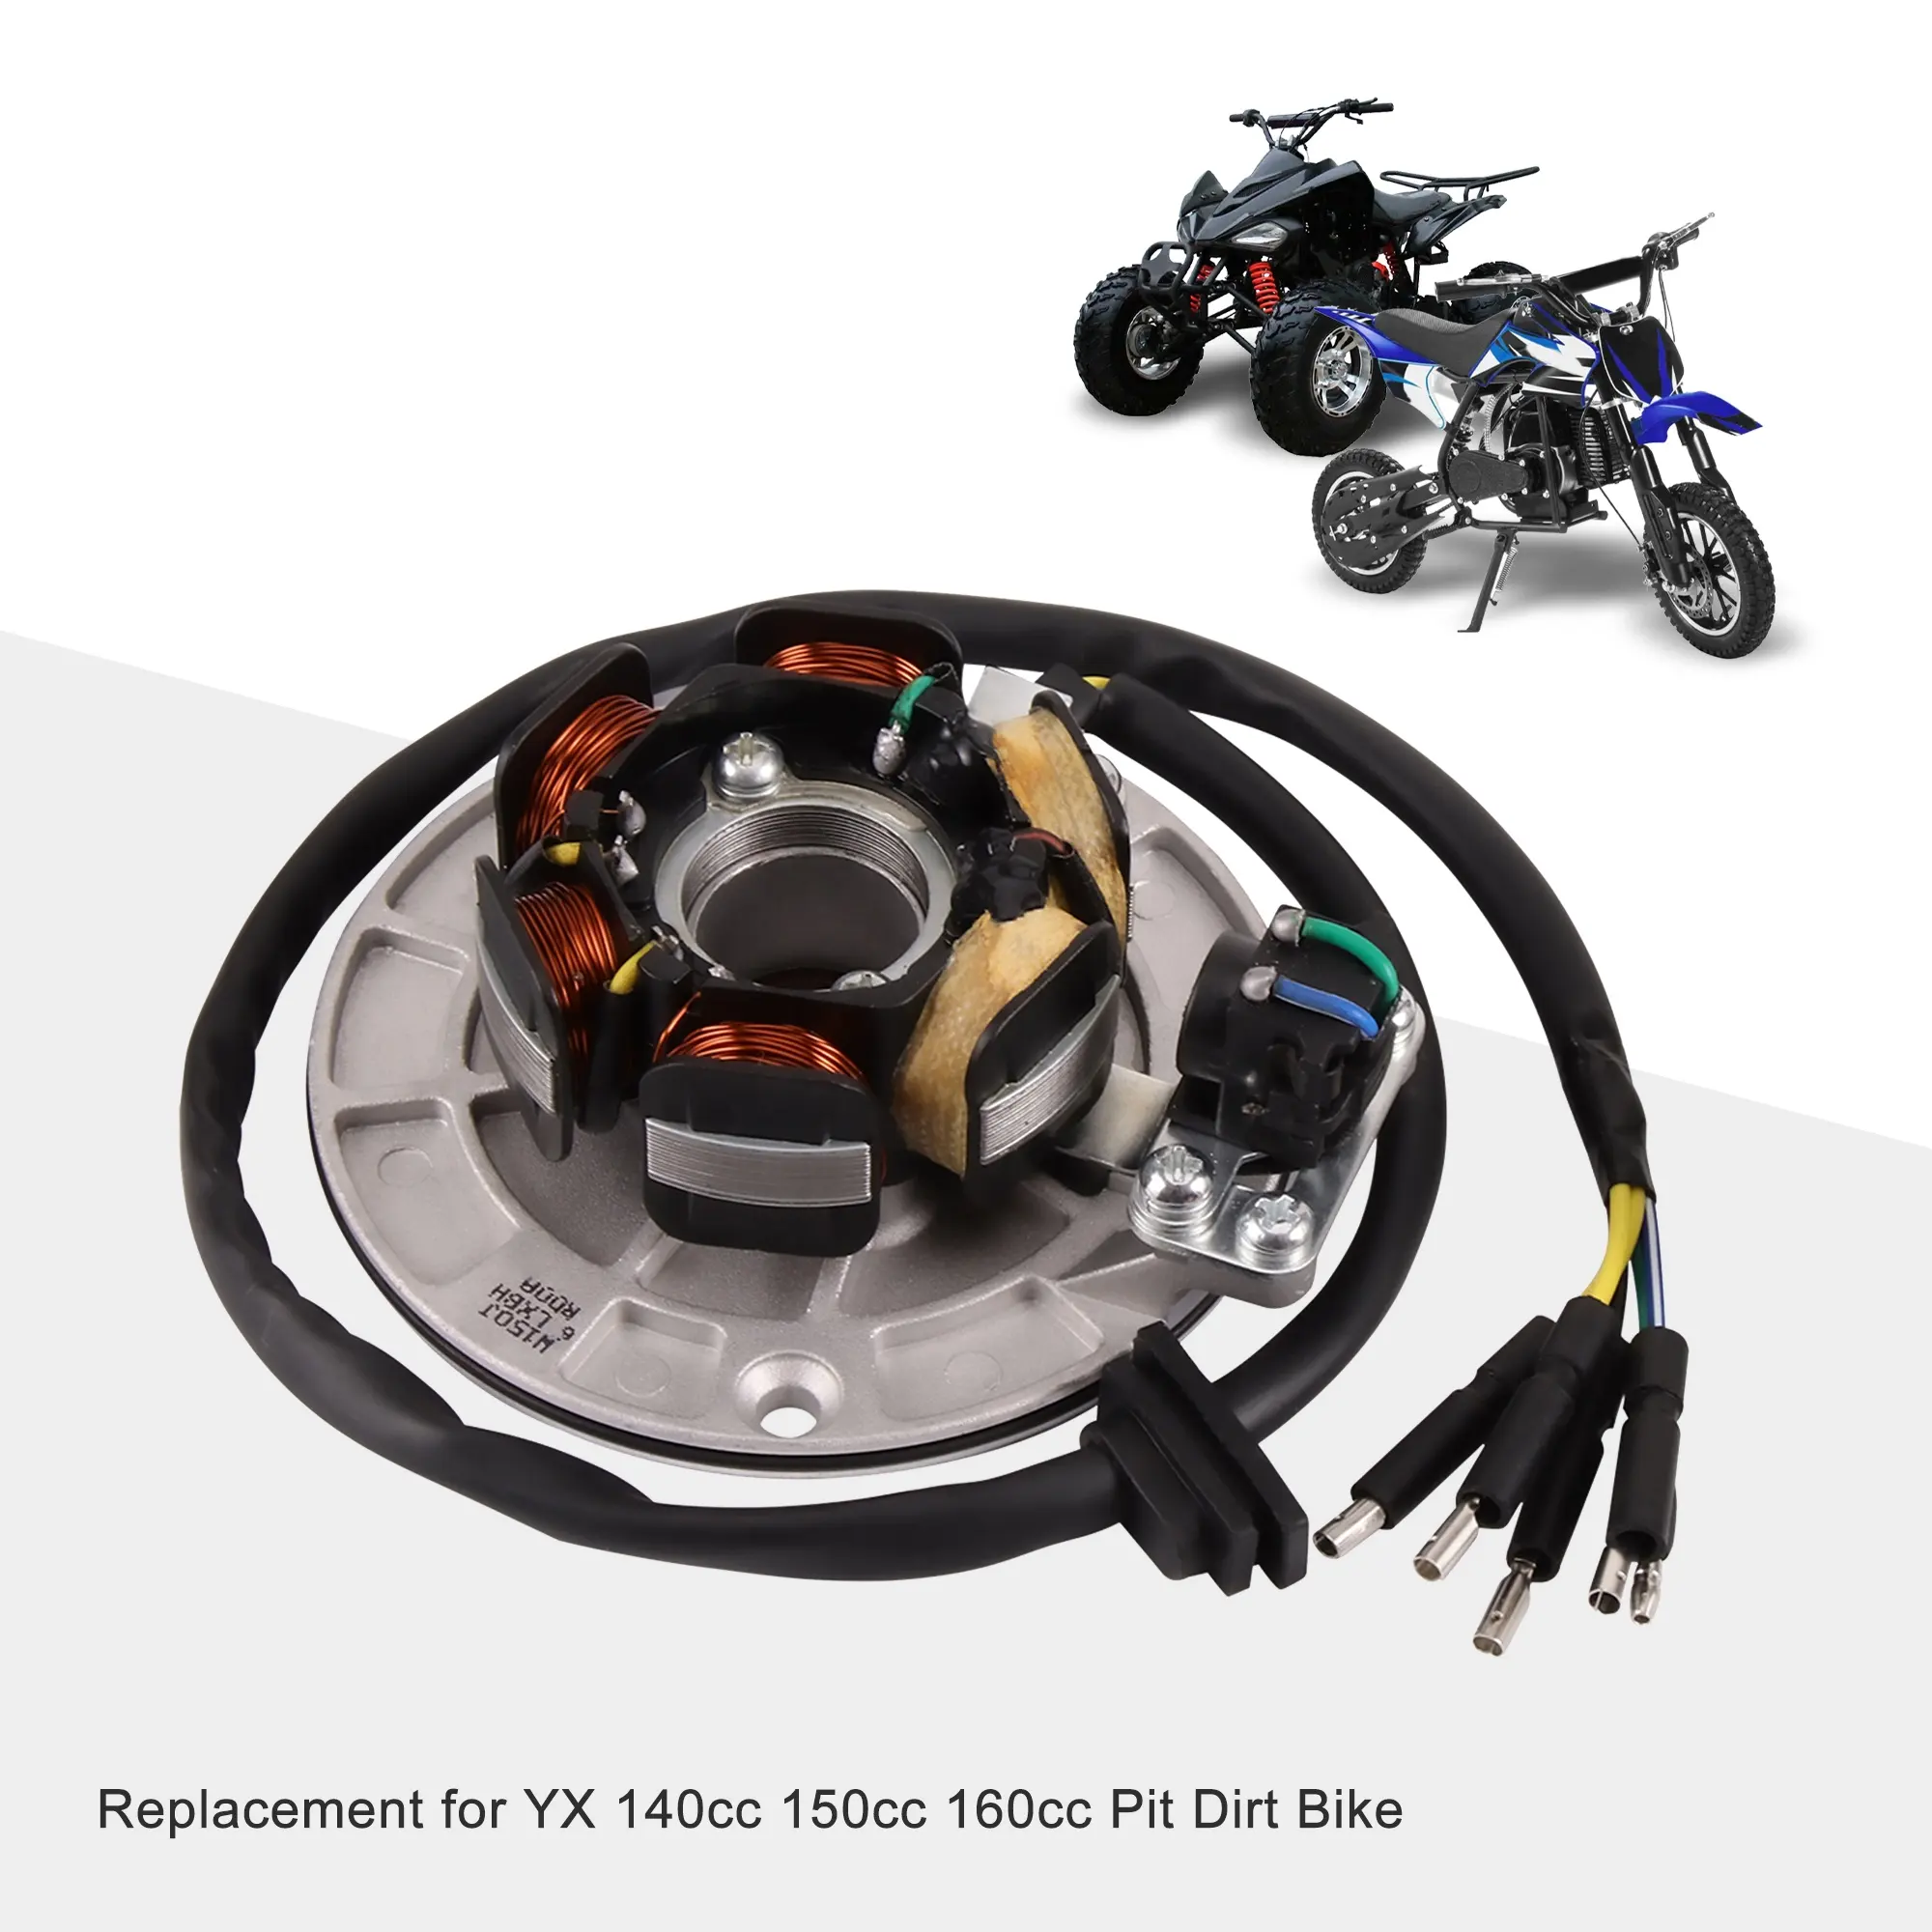 Goofit magneto kit de substituição, kit de volante e rotor para substituição para yx 140cc 150cc 160cc pit, dirt bike